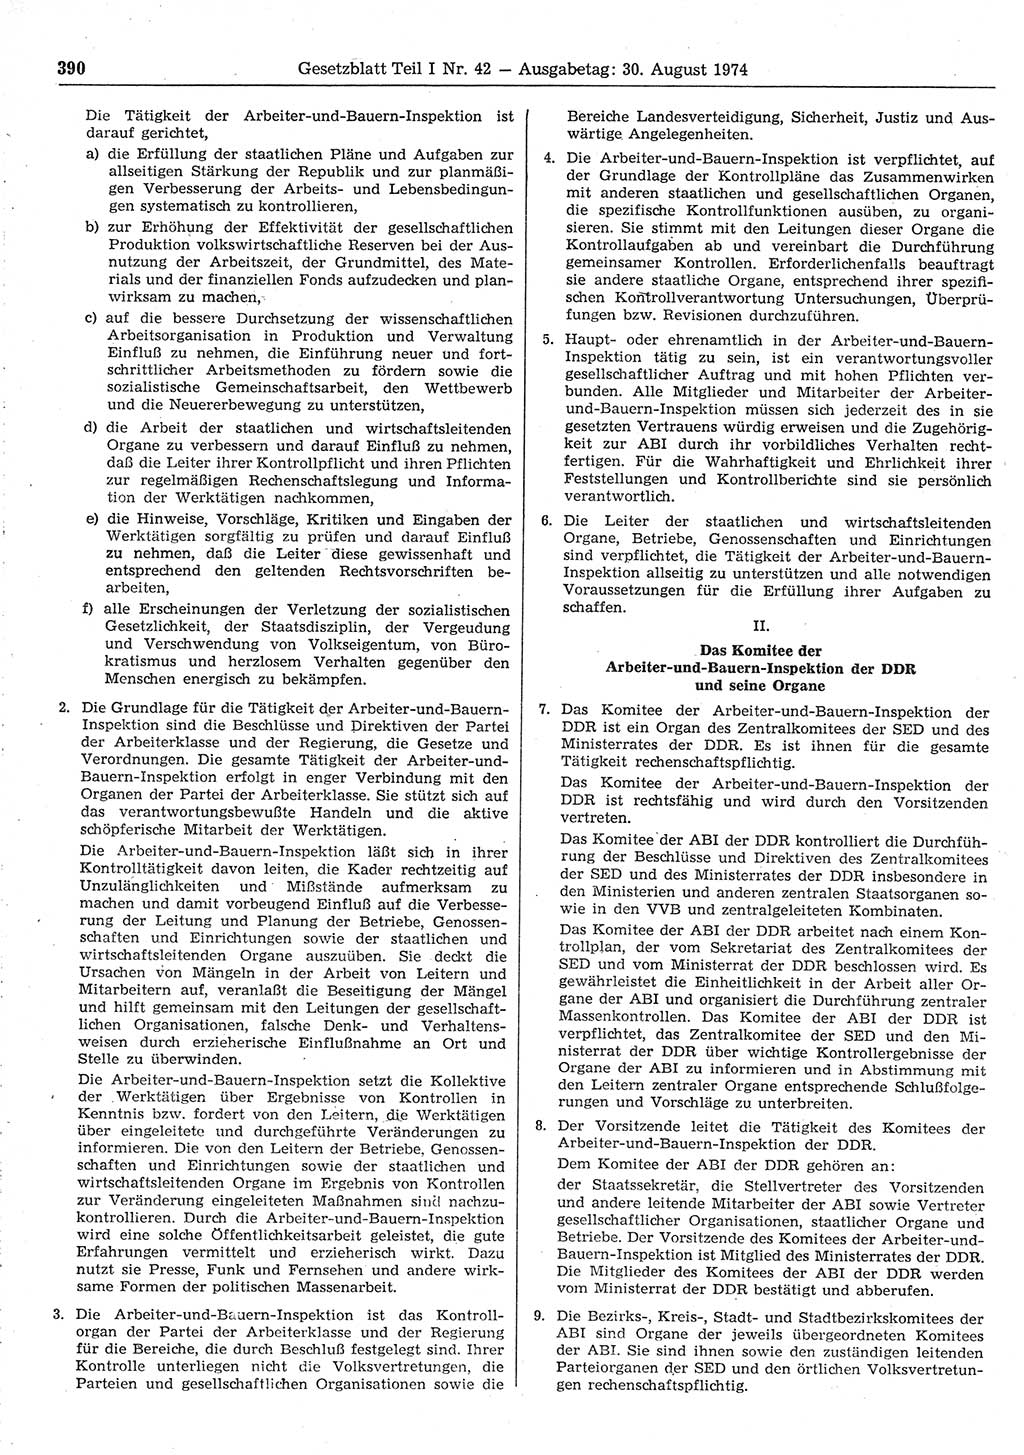 Gesetzblatt (GBl.) der Deutschen Demokratischen Republik (DDR) Teil Ⅰ 1974, Seite 390 (GBl. DDR Ⅰ 1974, S. 390)